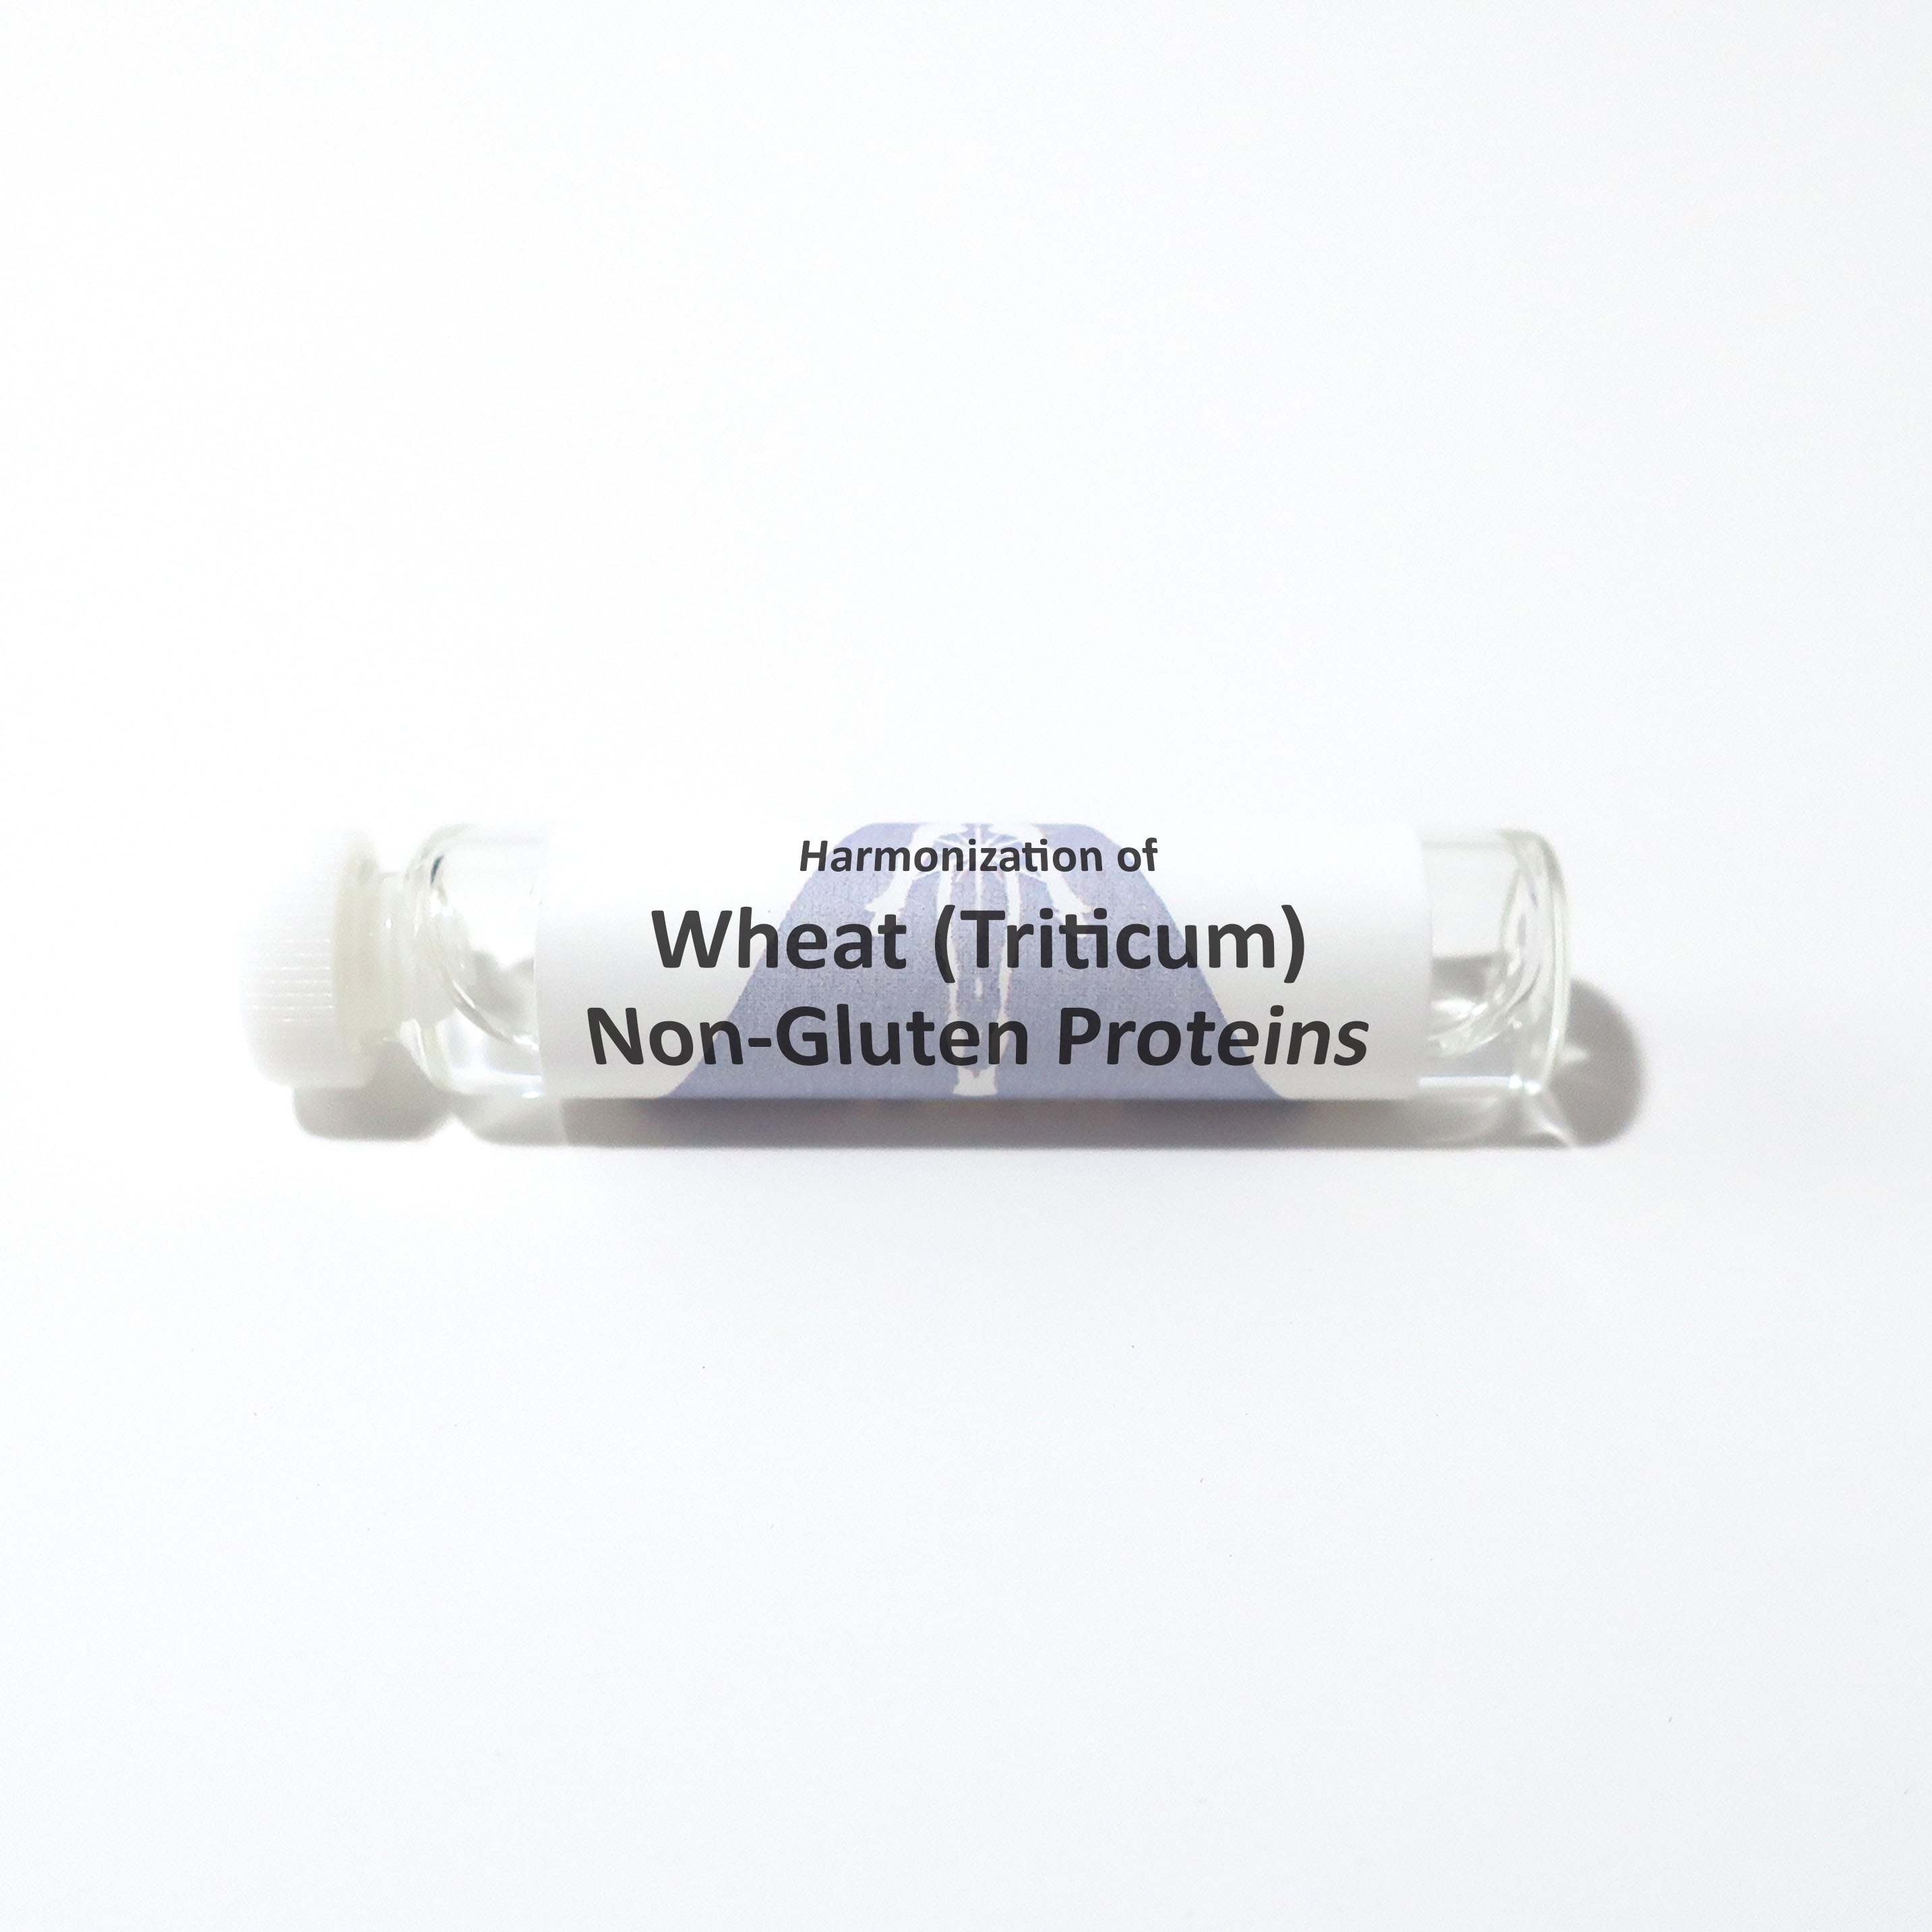 Wheat (Triticum) Non-Gluten Proteins